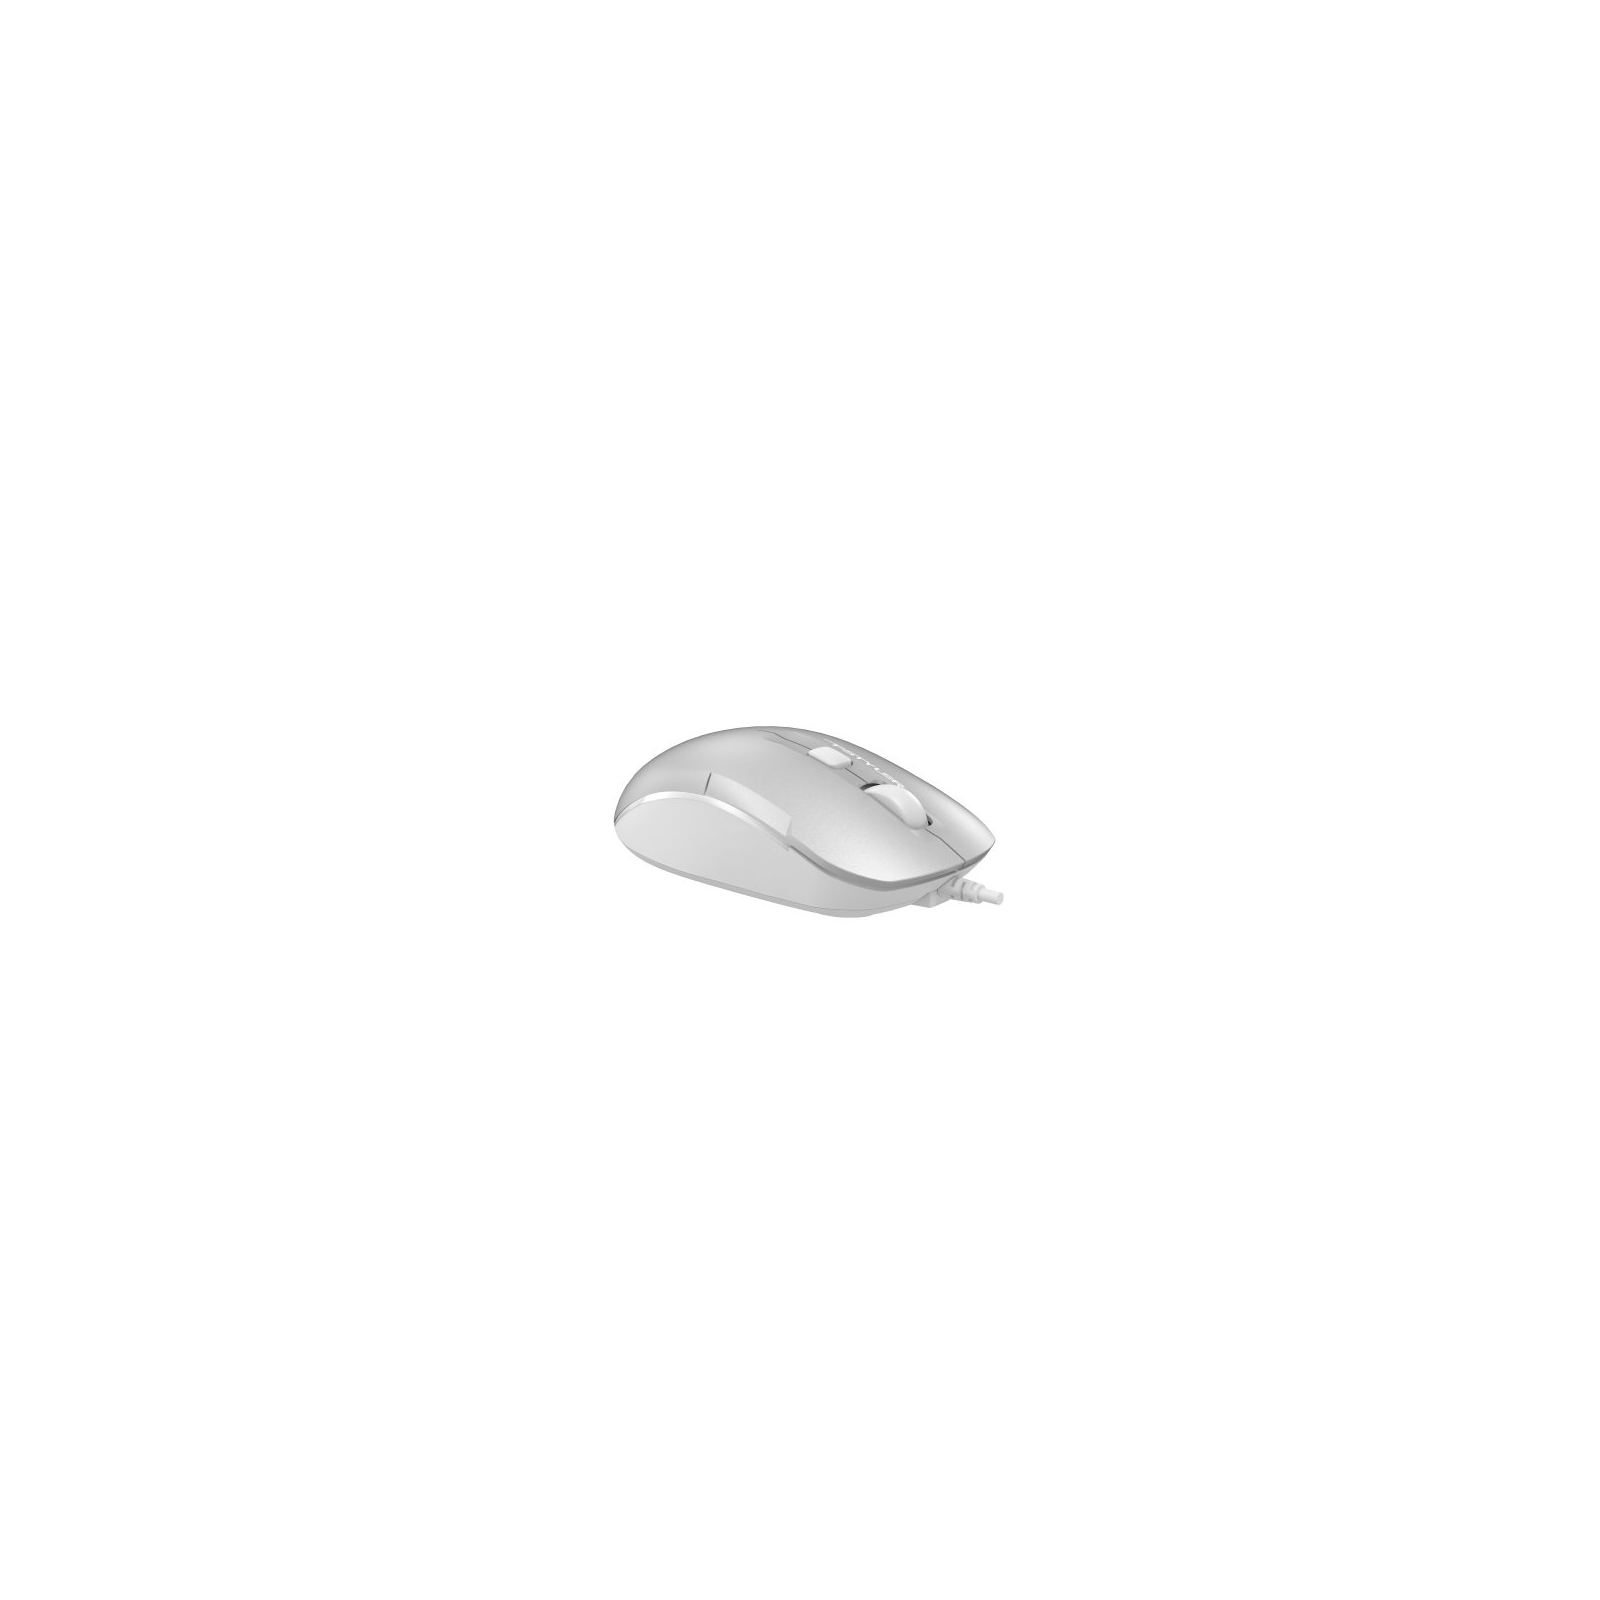 Мышка A4Tech FM26 USB Cafe Latte (4711421991391) изображение 3